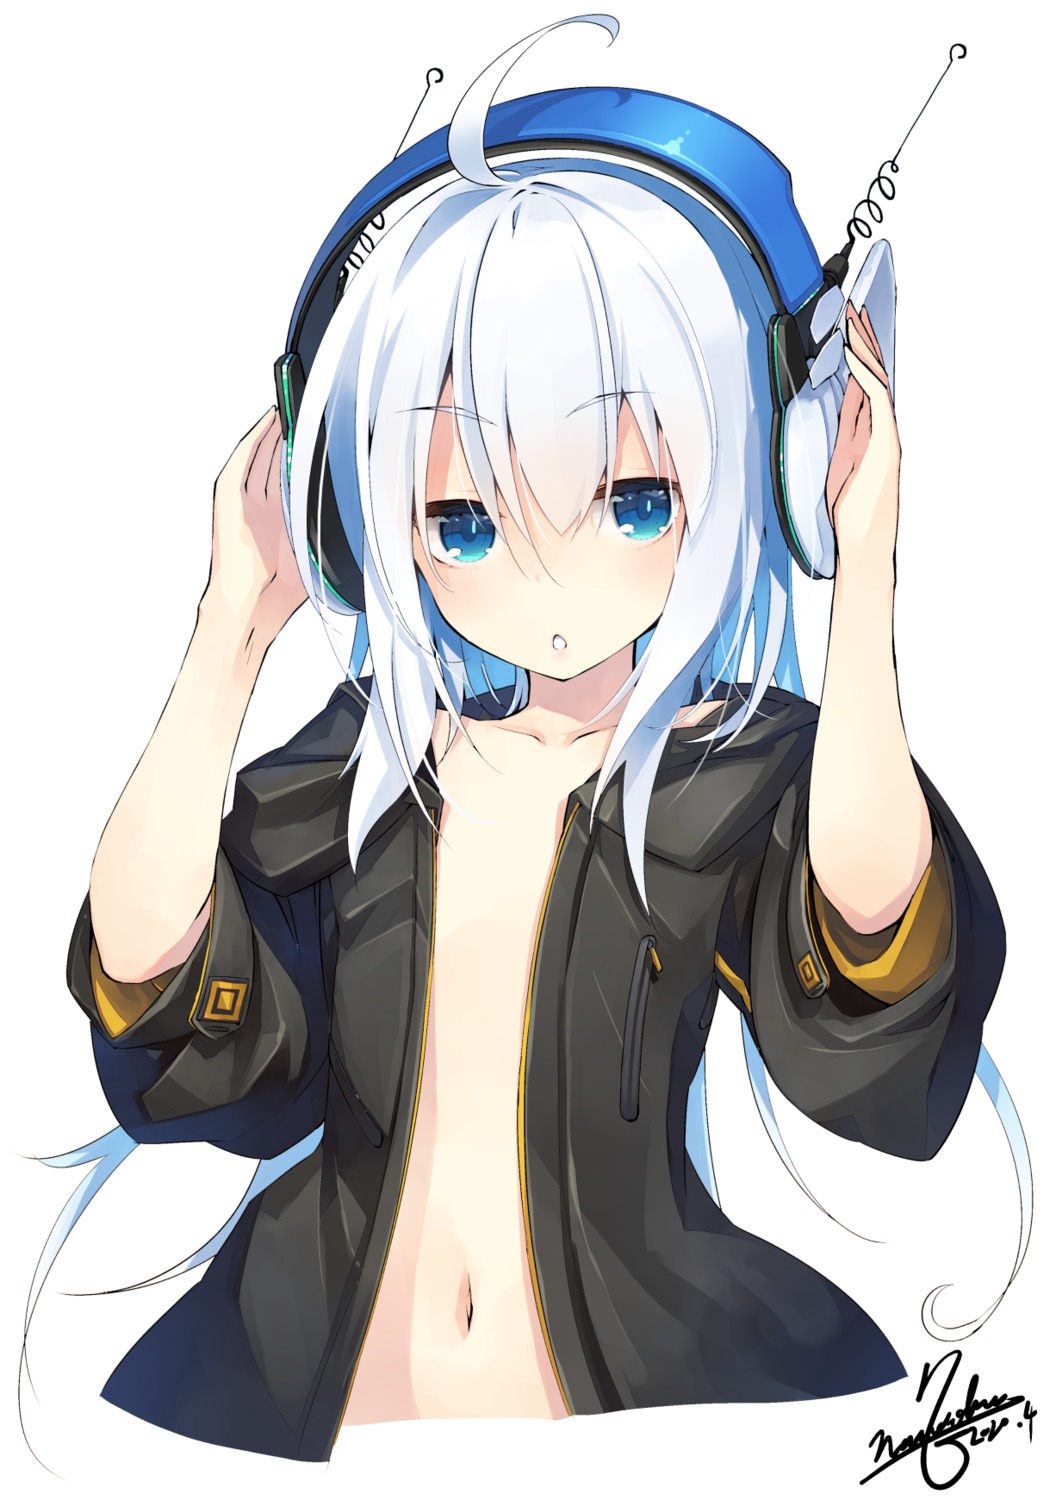 headphones loli nanaroku no_bra open_shirt